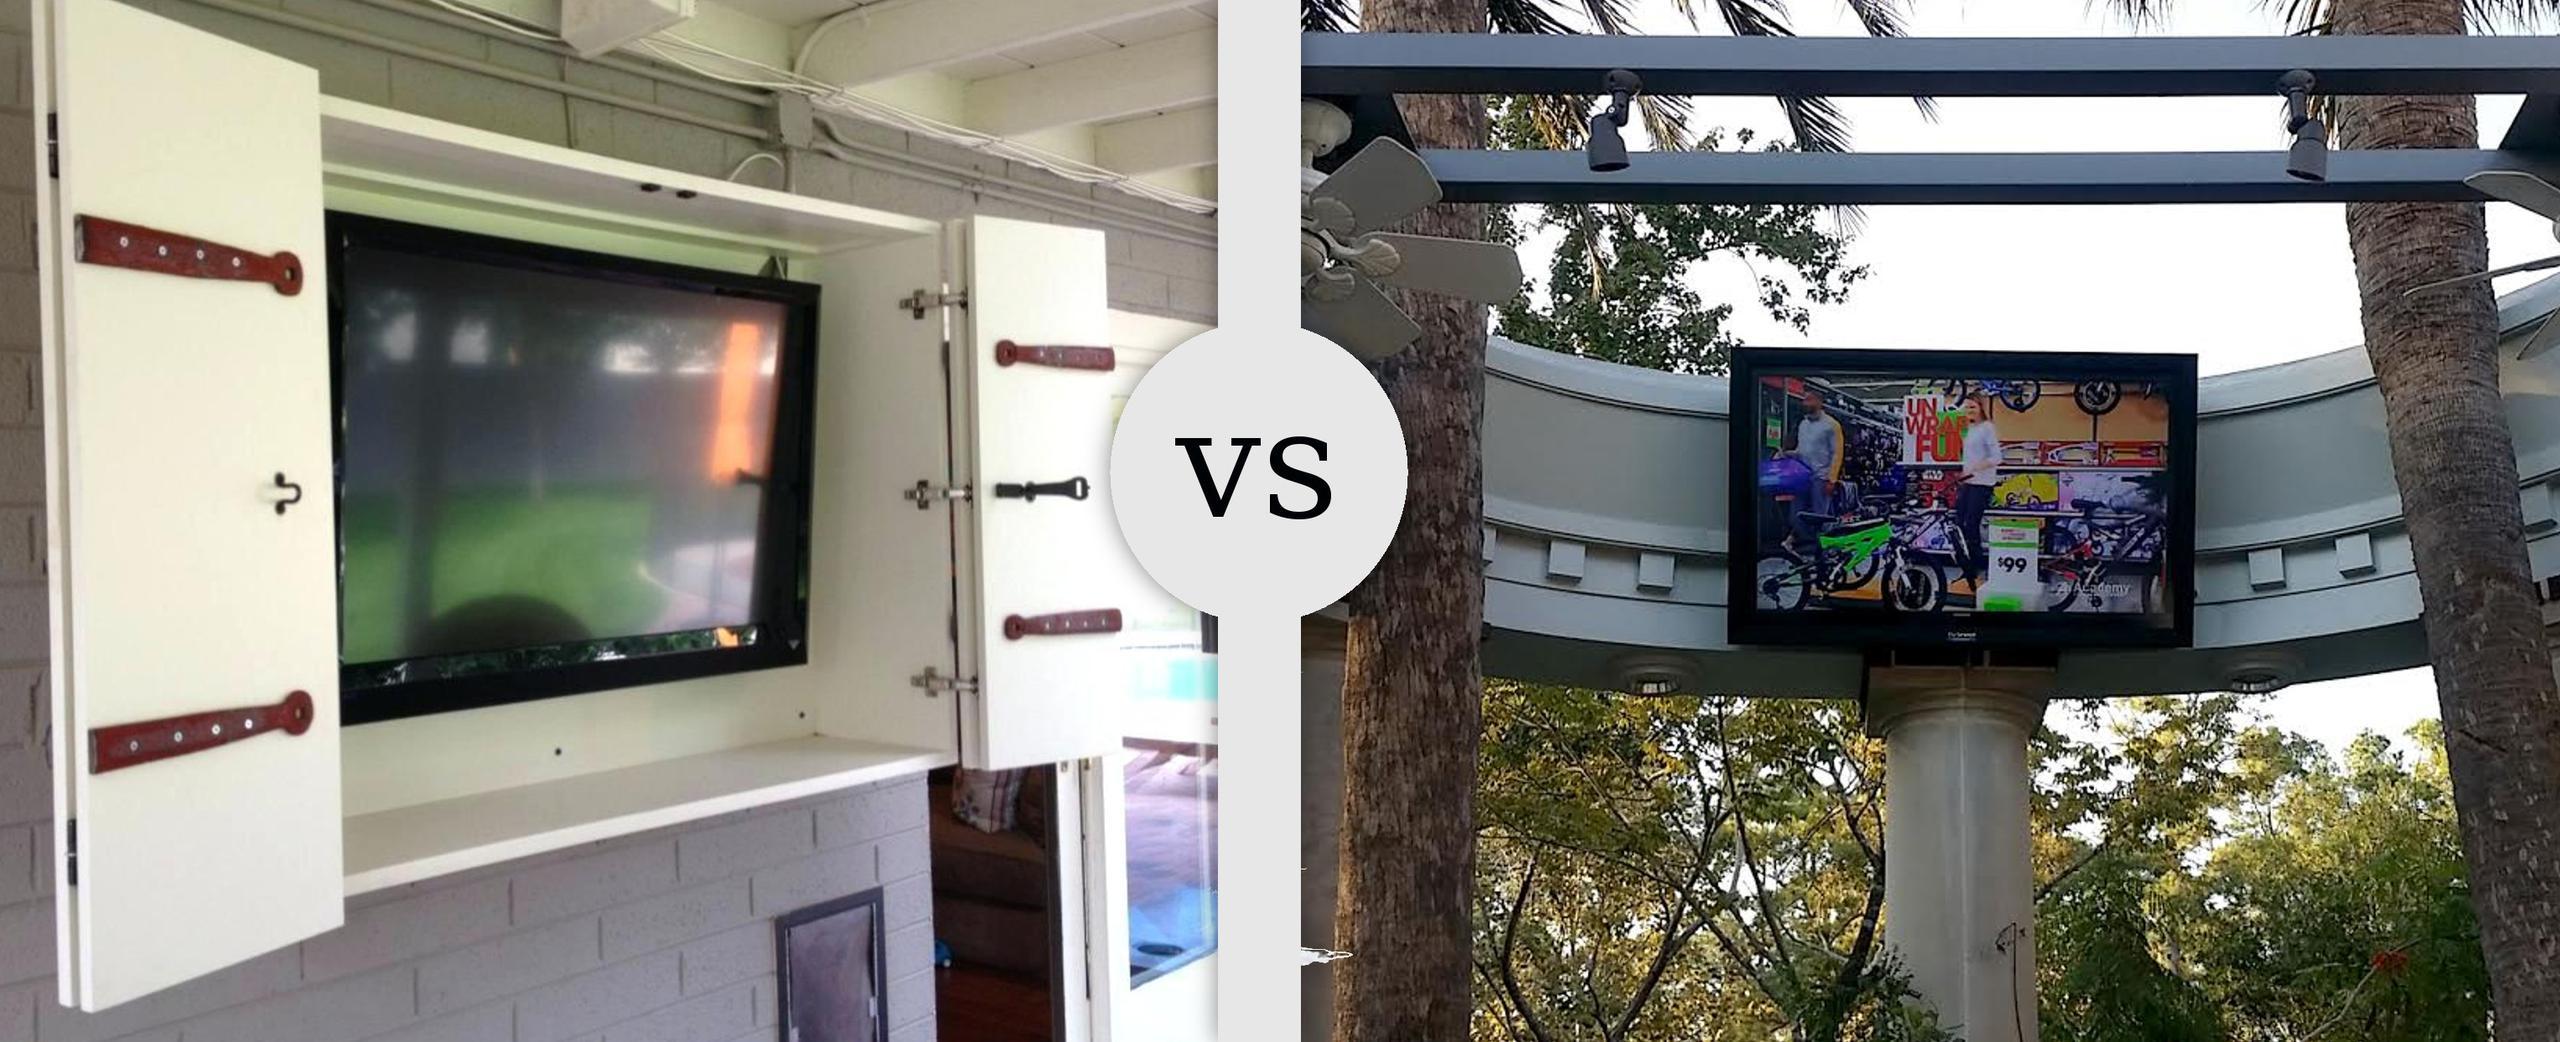 Weatherproof Outdoor Tv Cabinet For Flat Screens